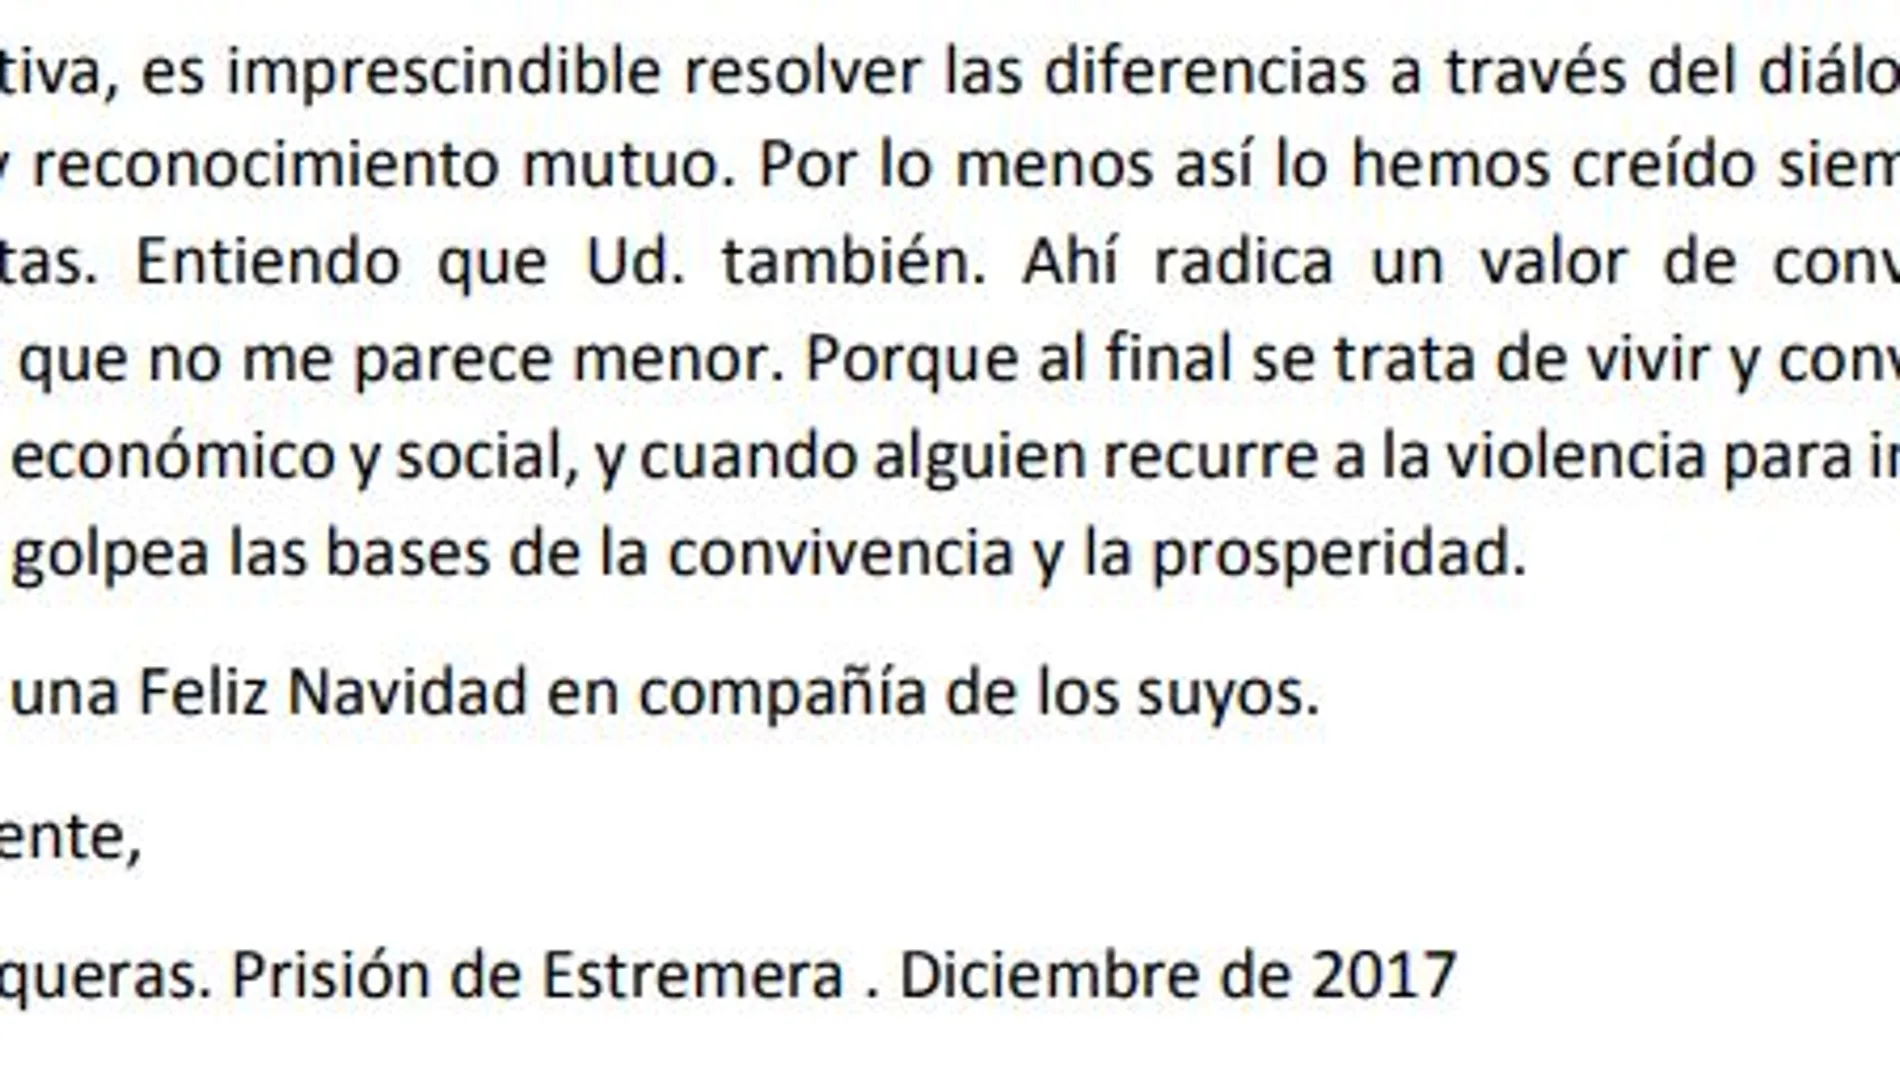 La carta de Junqueras a Rajoy: «Acepte el resultado del 21-D sin porrazos»